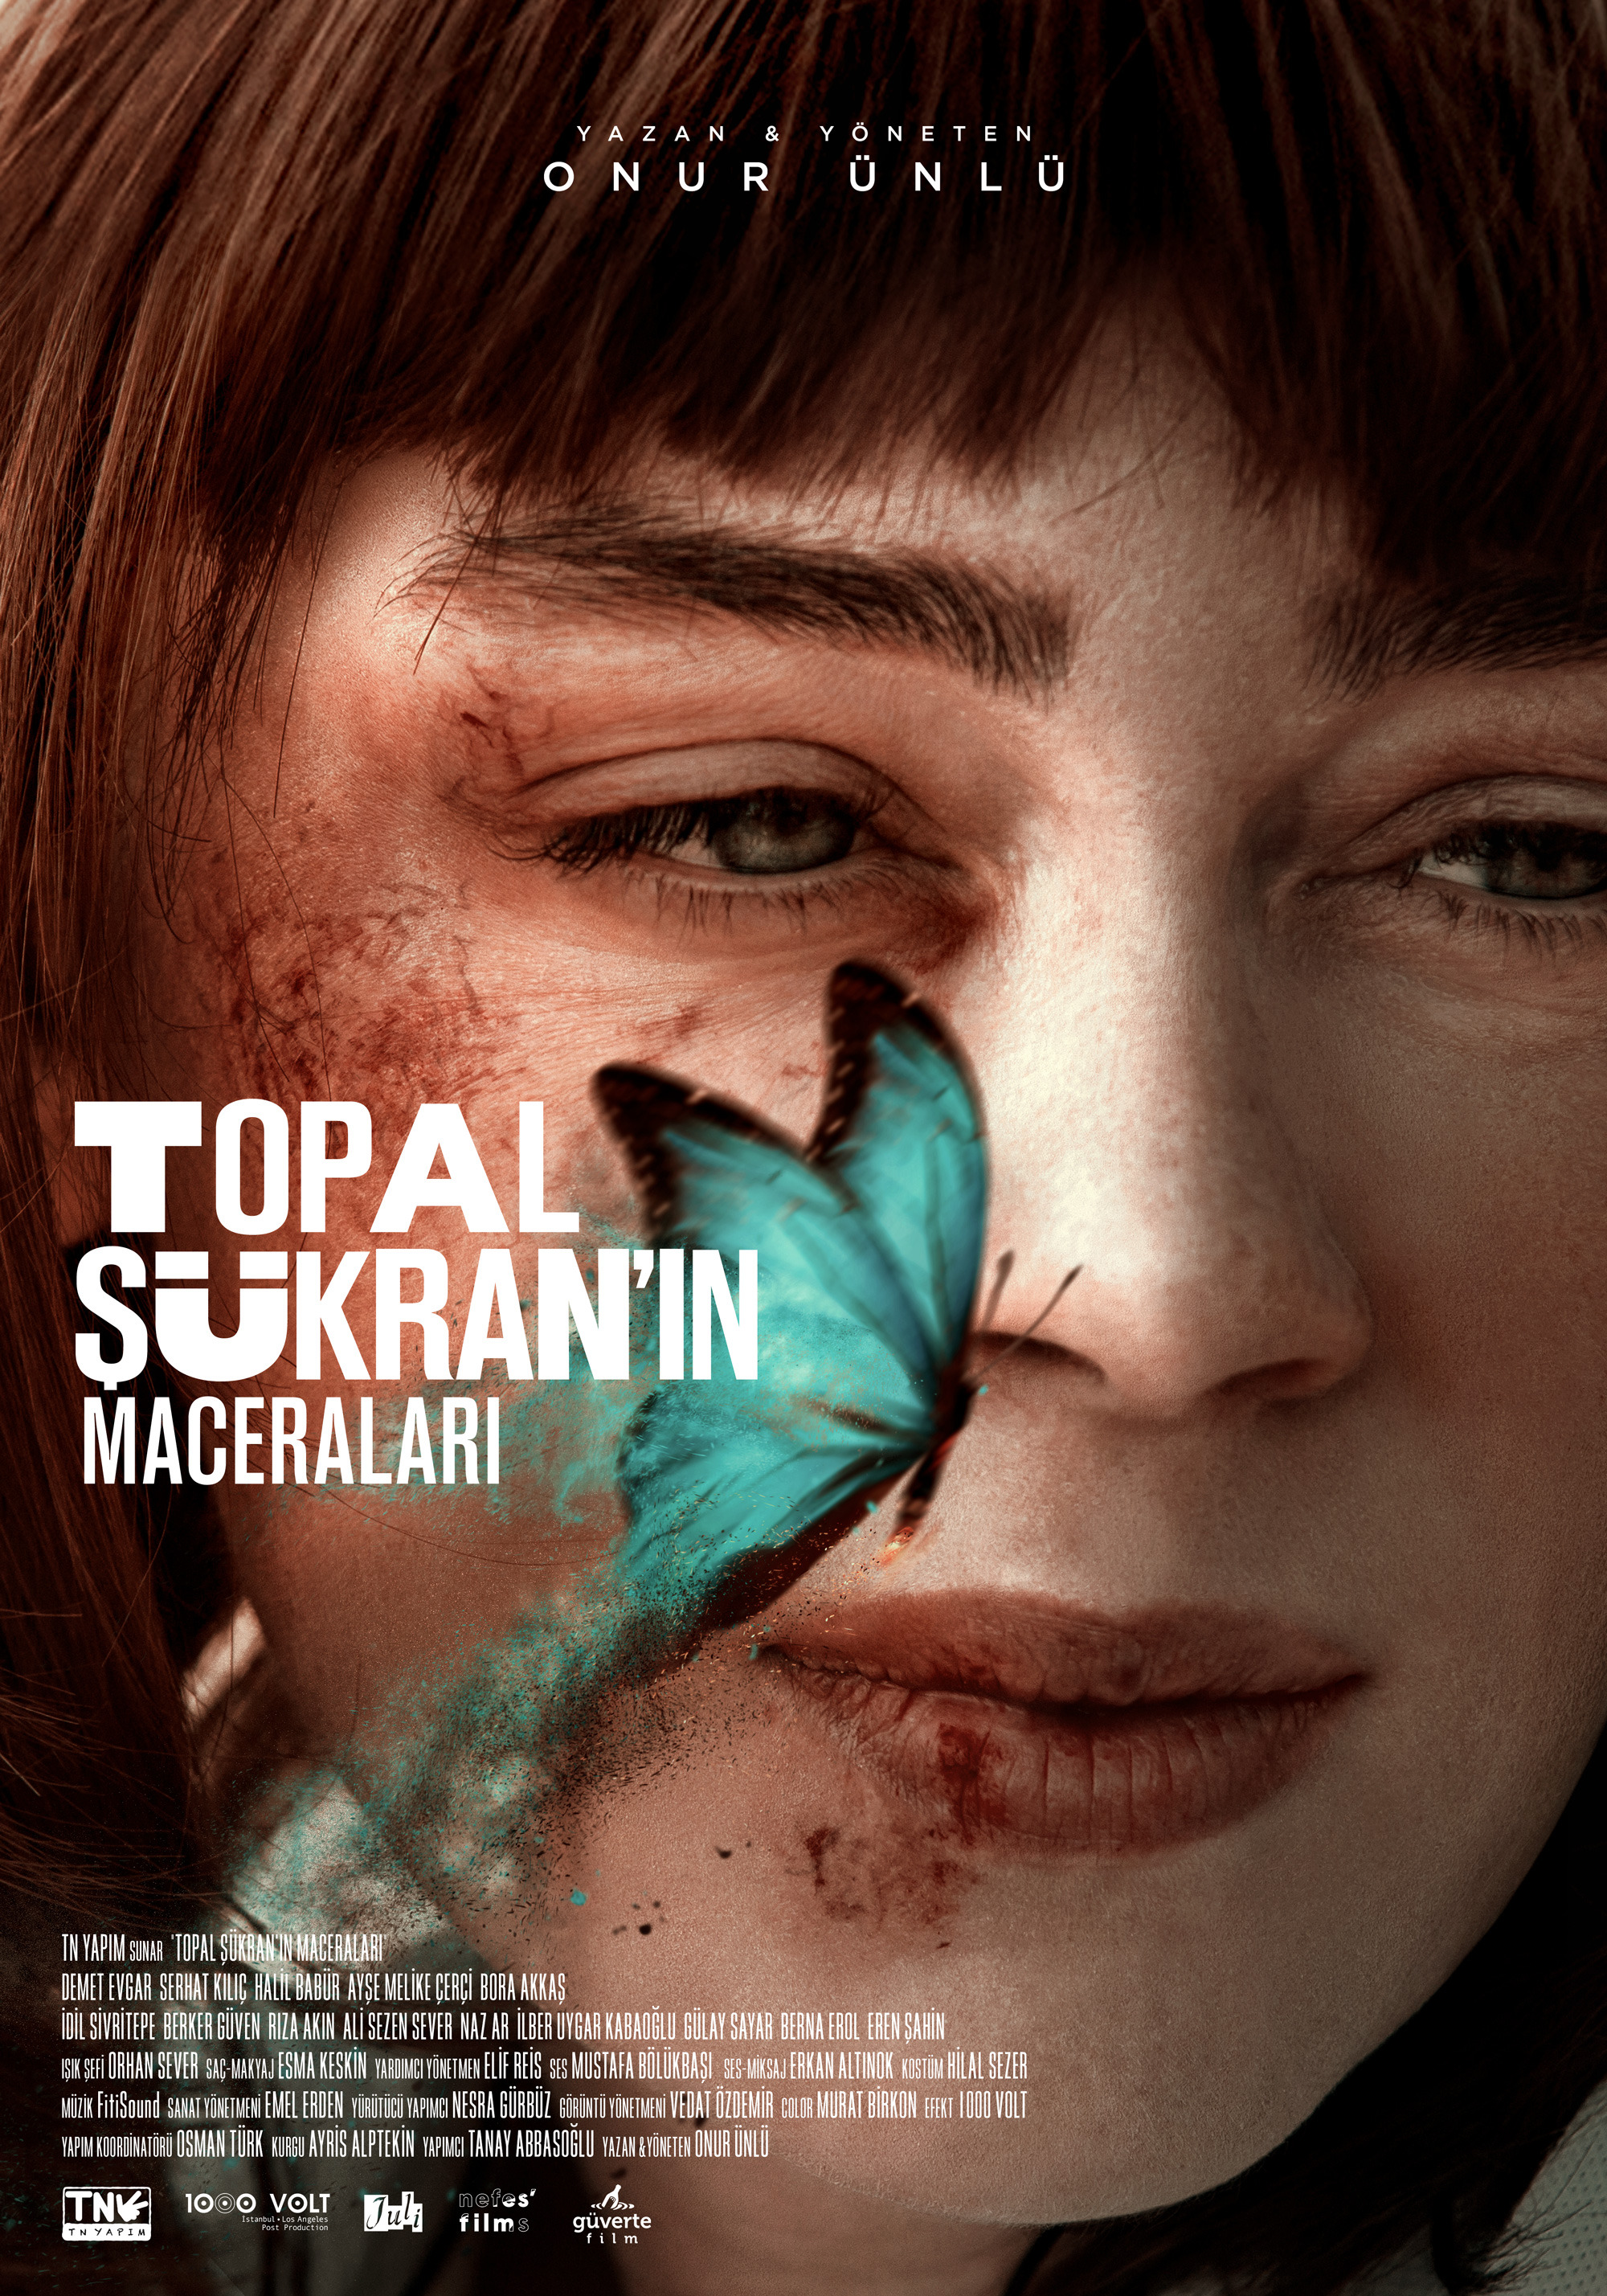 Mega Sized Movie Poster Image for Topal Sükran'in Maceralari 